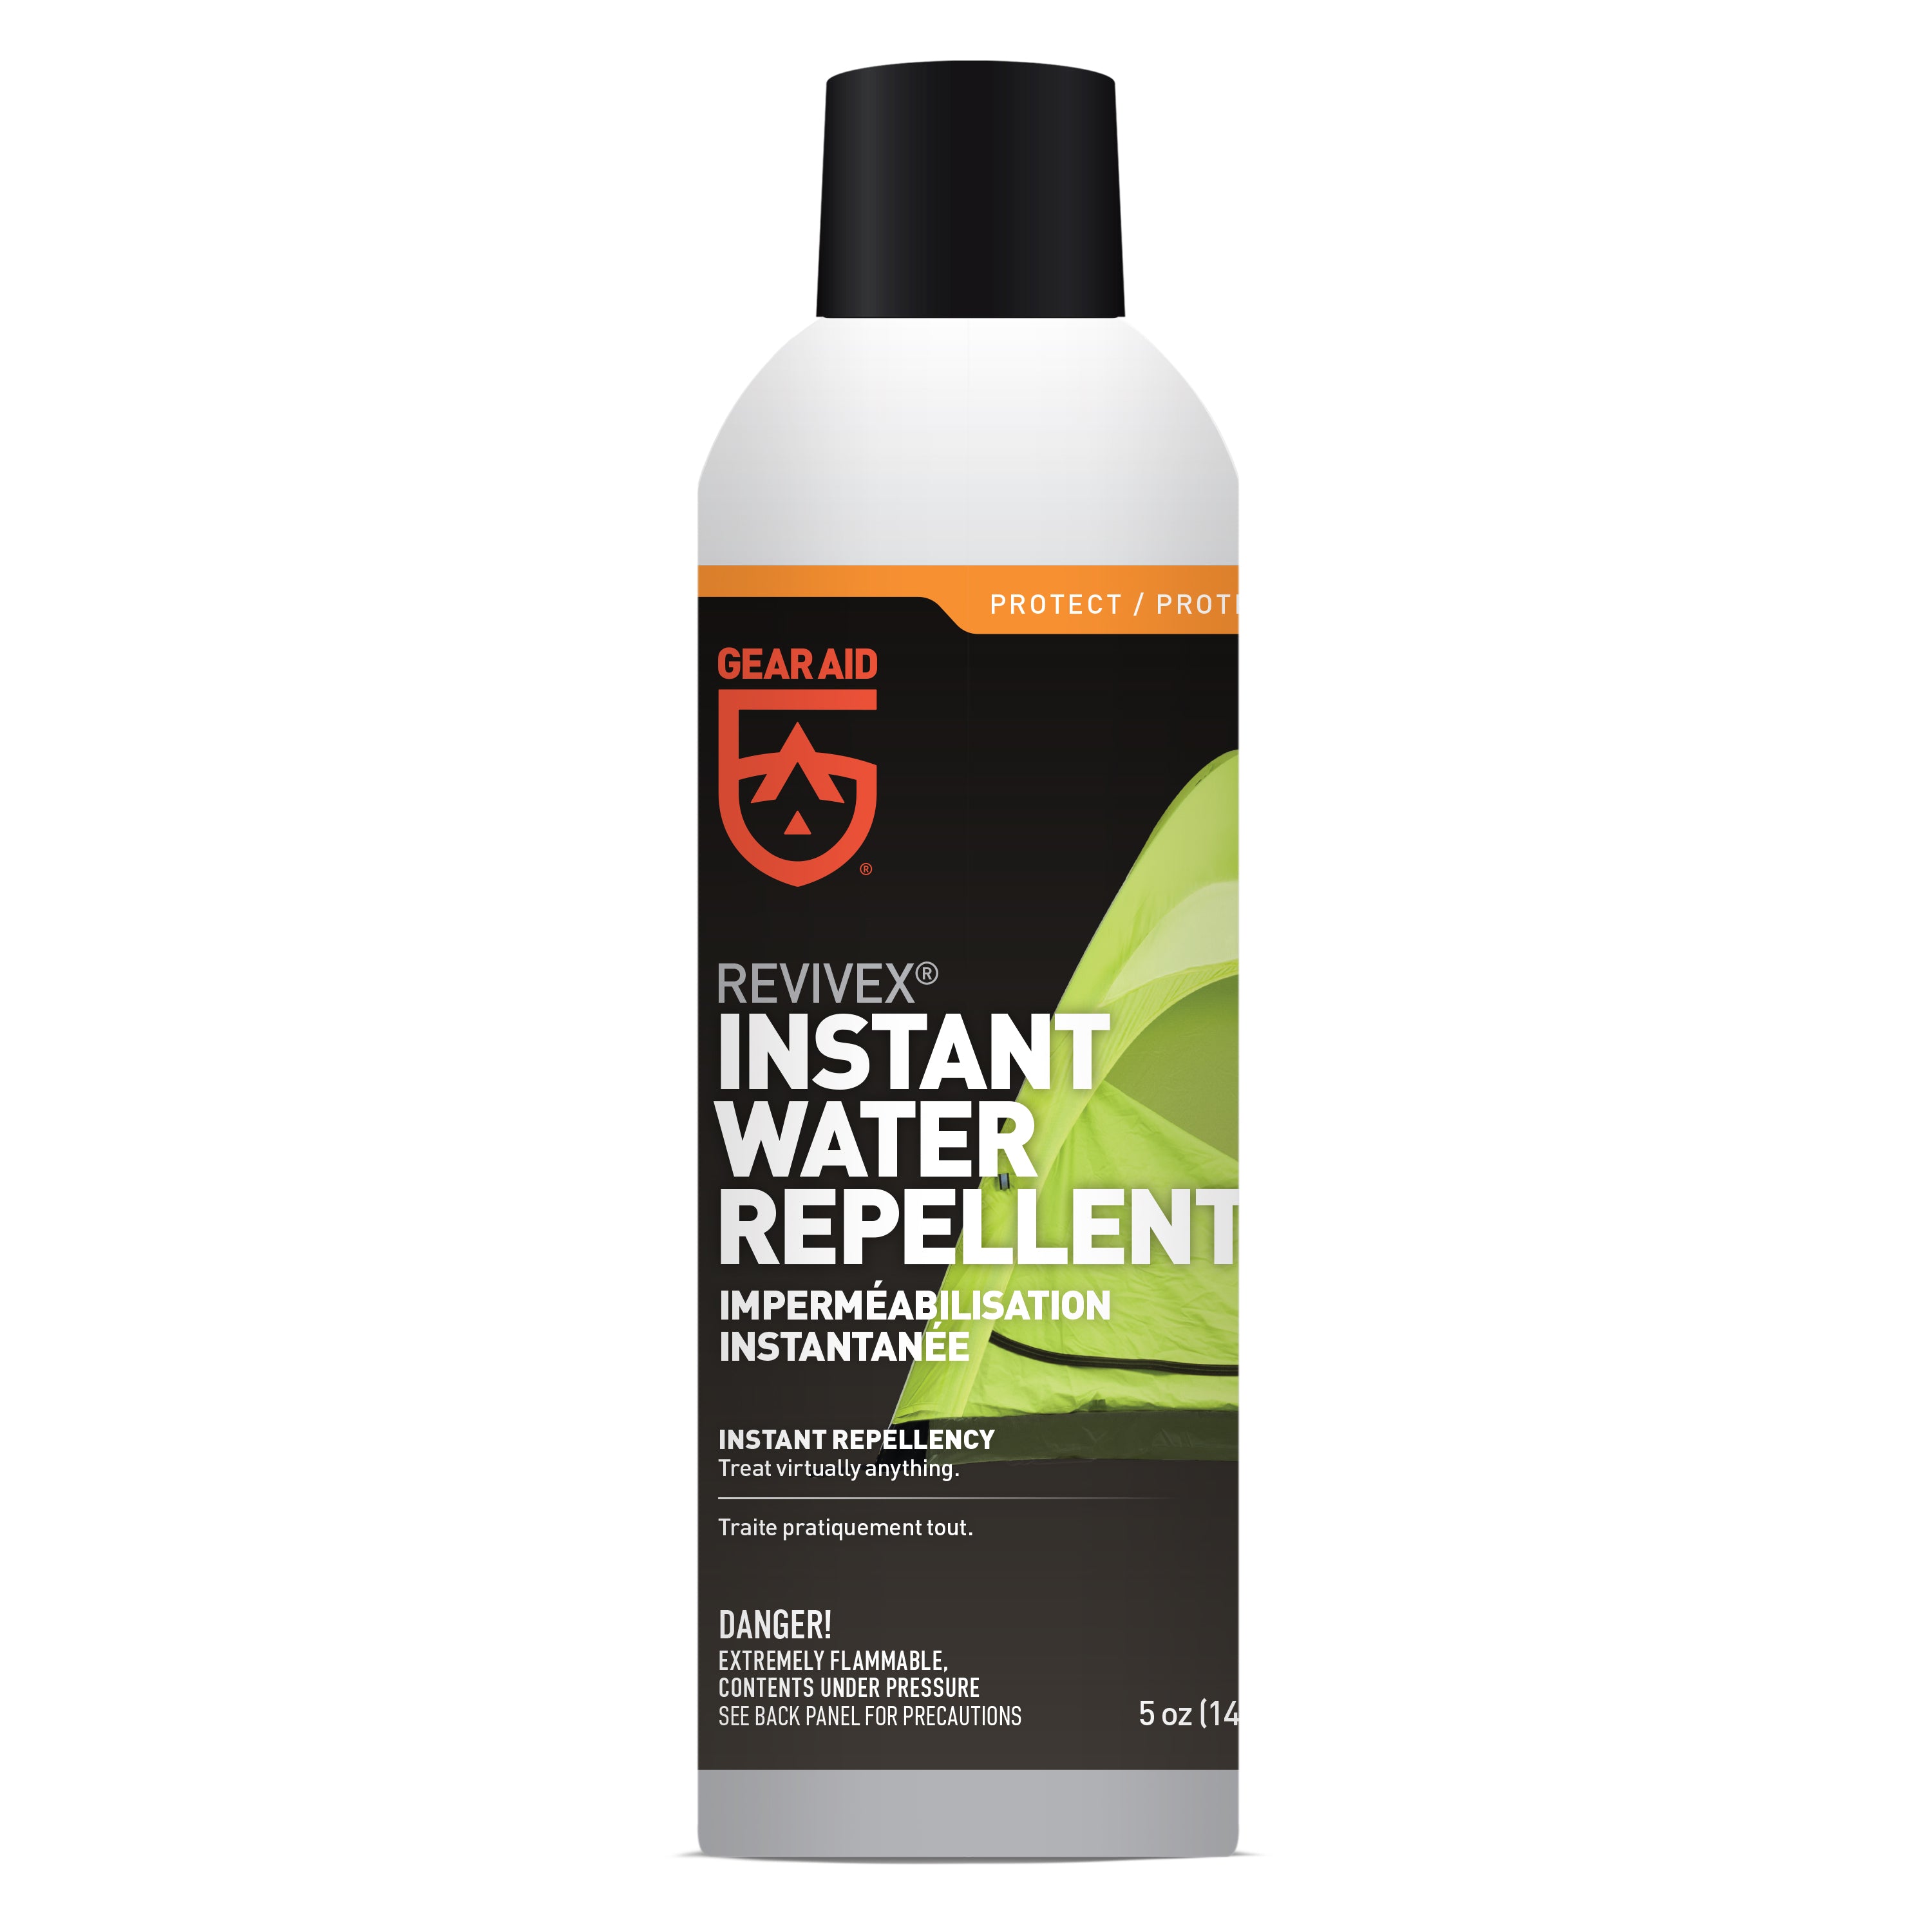 H2O Repel / UV Protection Spray